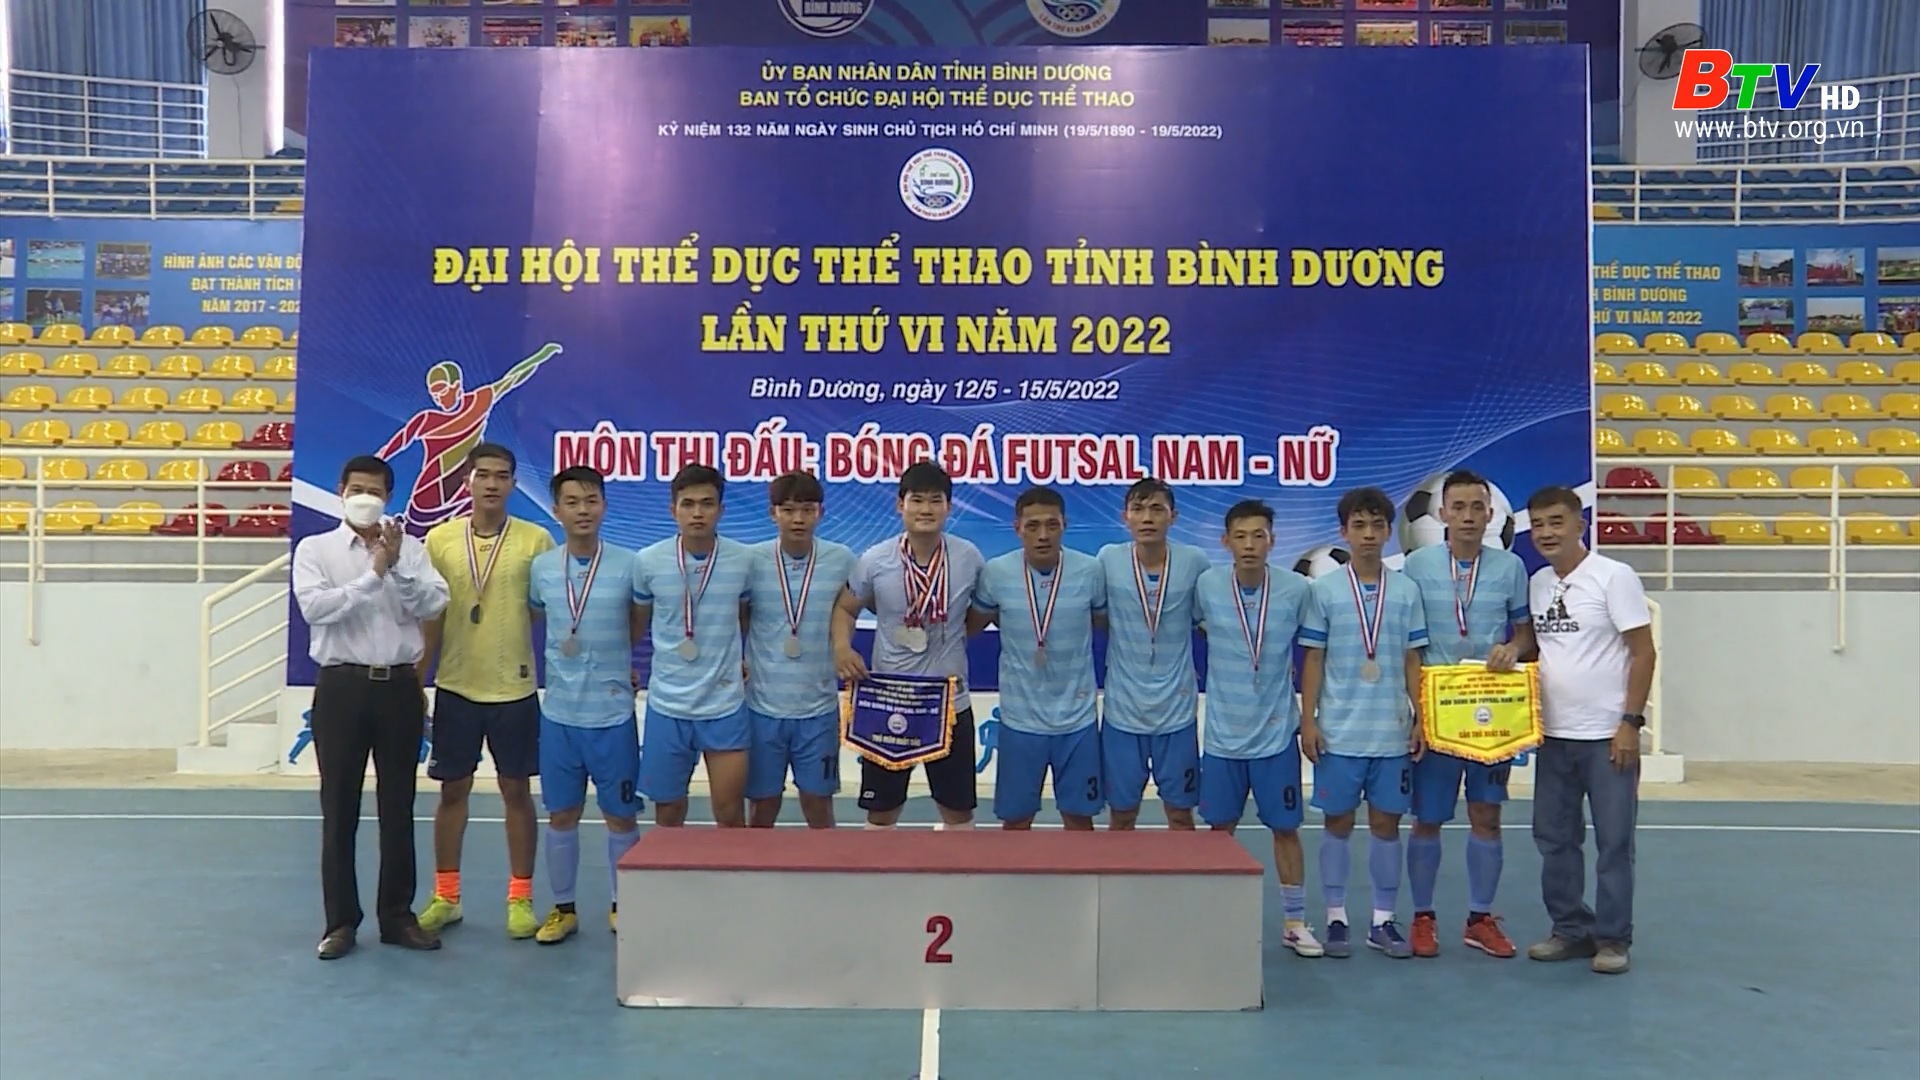 Kết thúc môn bóng đá Futsal Đại hội TDTT tỉnh Bình Dương